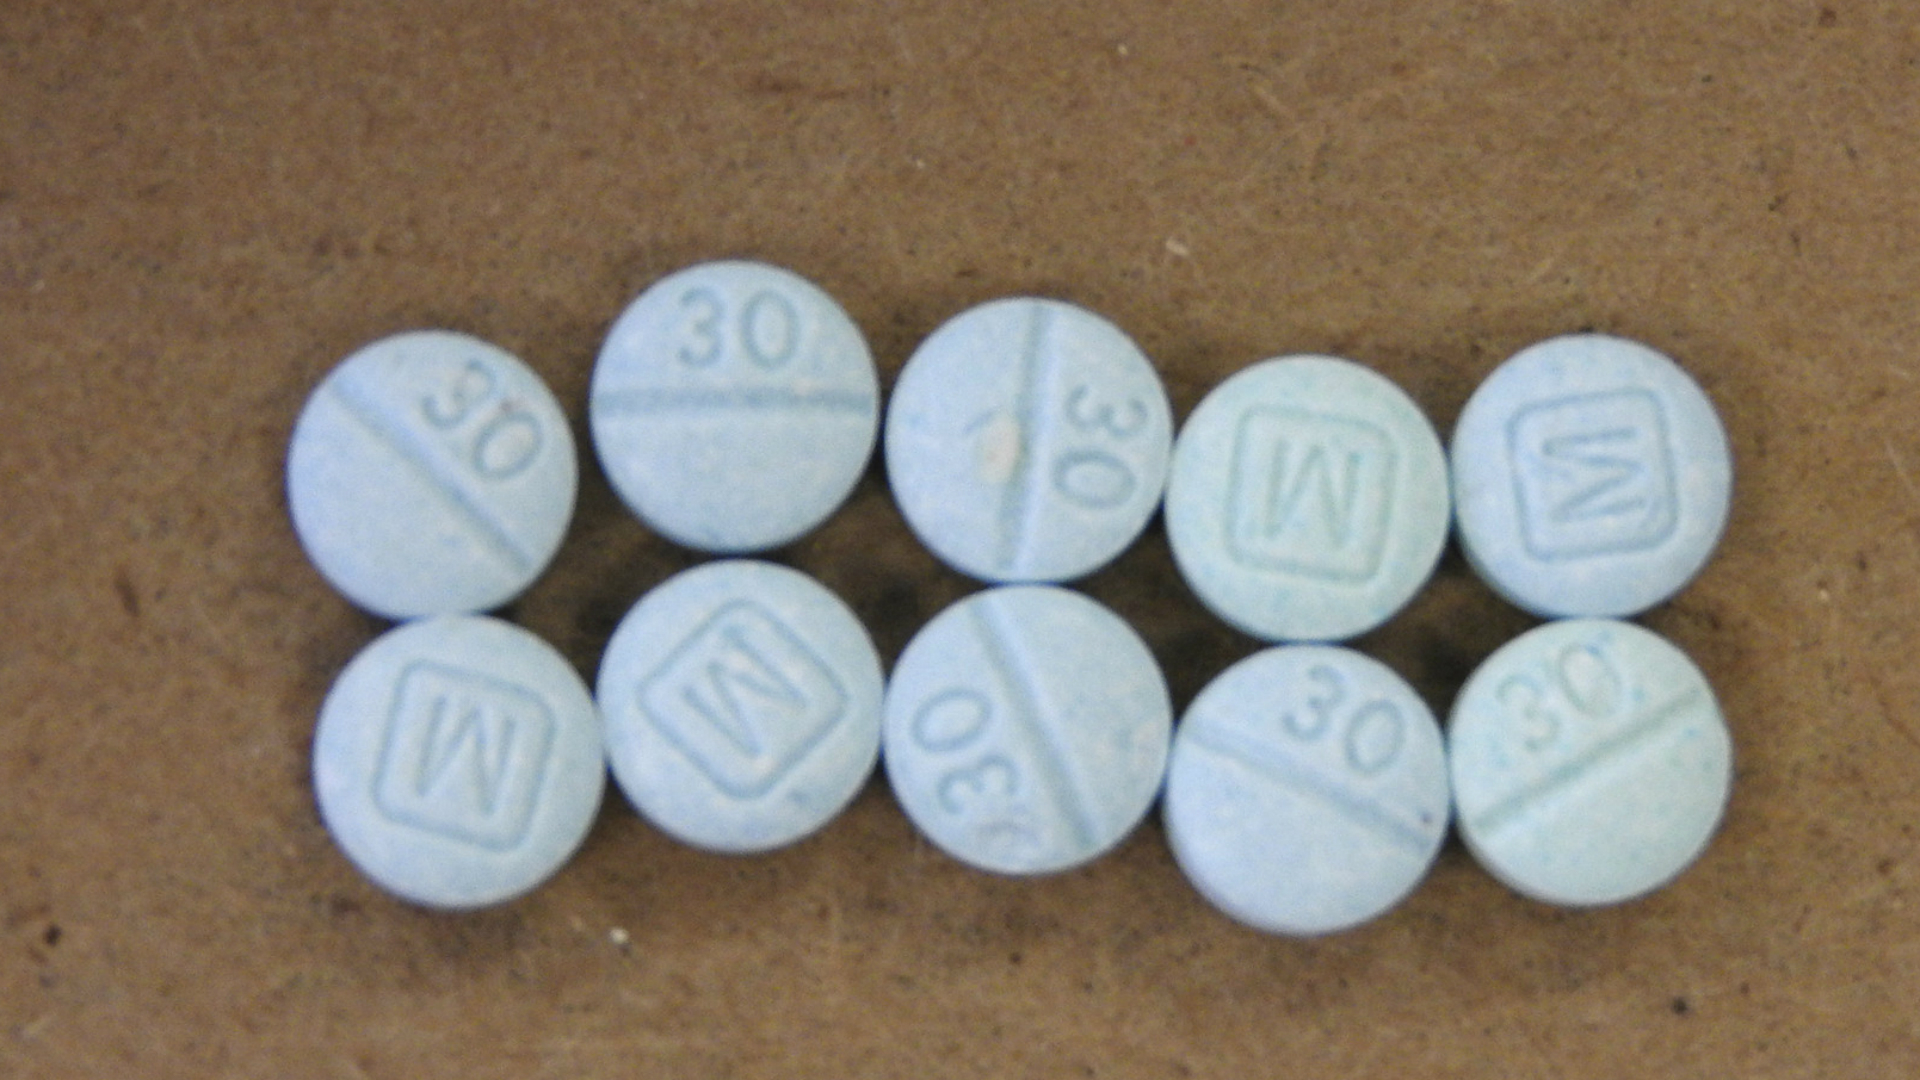 Algunas de las pastillas contaminadas con fentanilo no requerían de receta médica para ser compradas (Foto: Archivo)